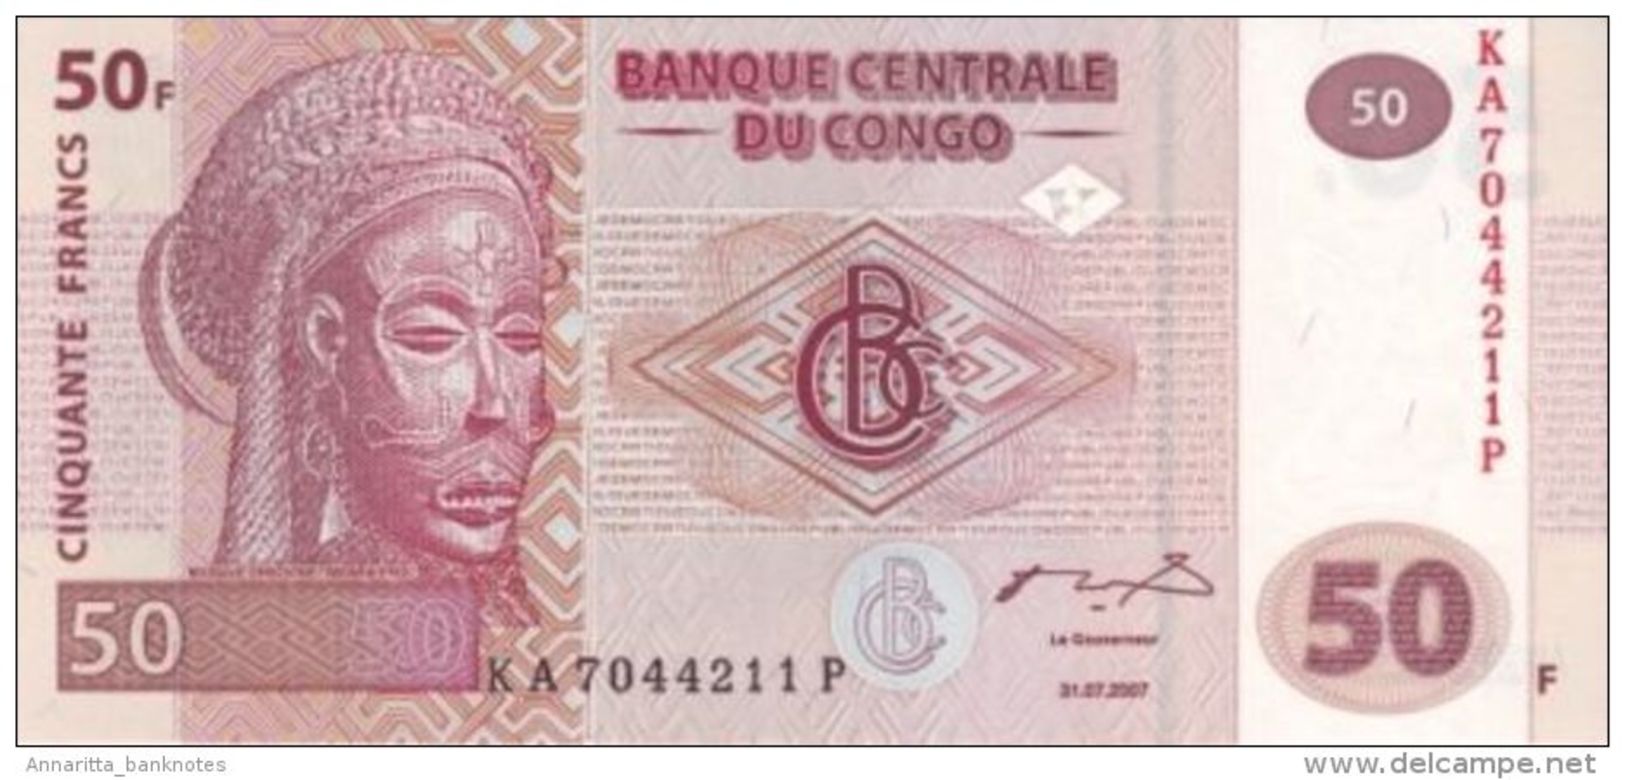 CONGO DEMOCRATIC REPUBLIC 50 FRANCS 2007 P-NL UNC  [CD319a] - Democratic Republic Of The Congo & Zaire